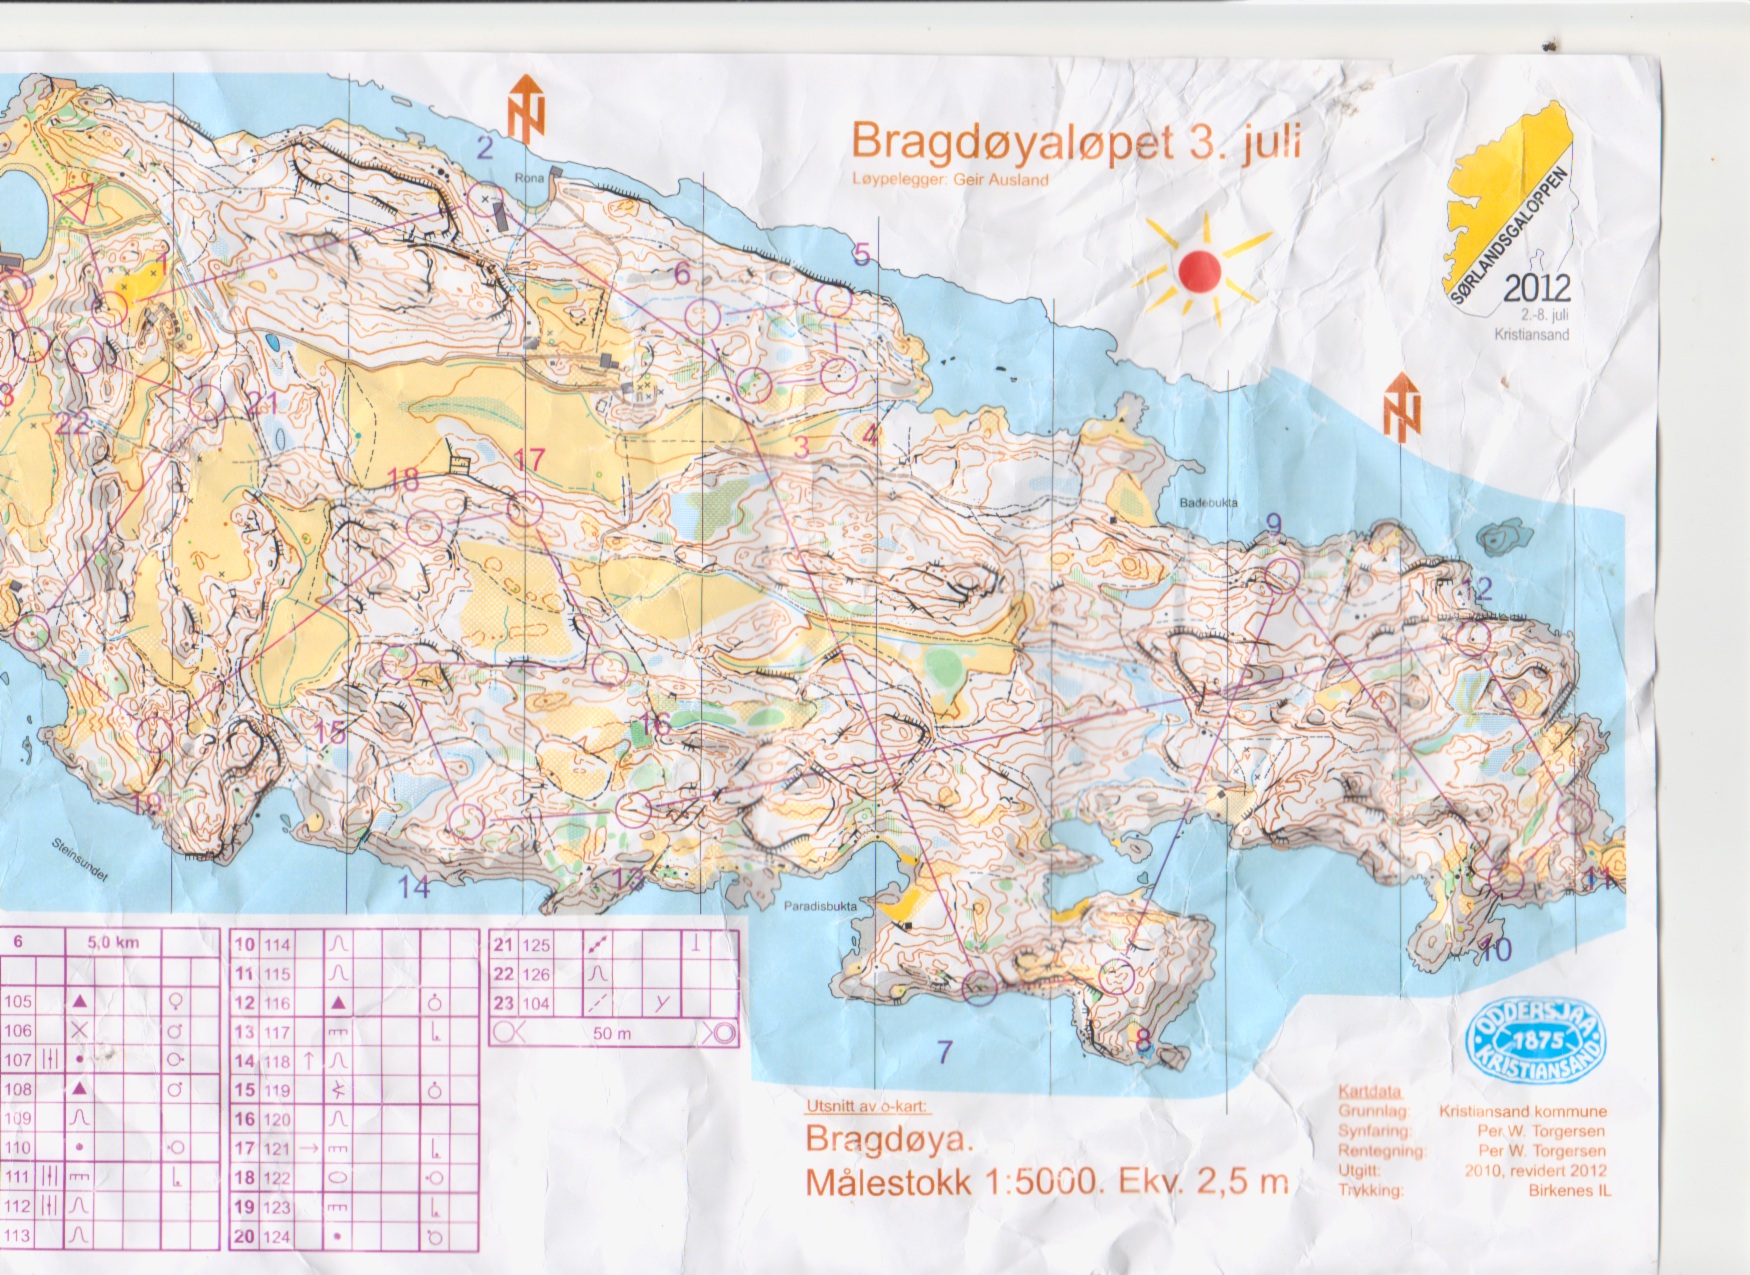 Bragdøyaløpet (2012-07-03)